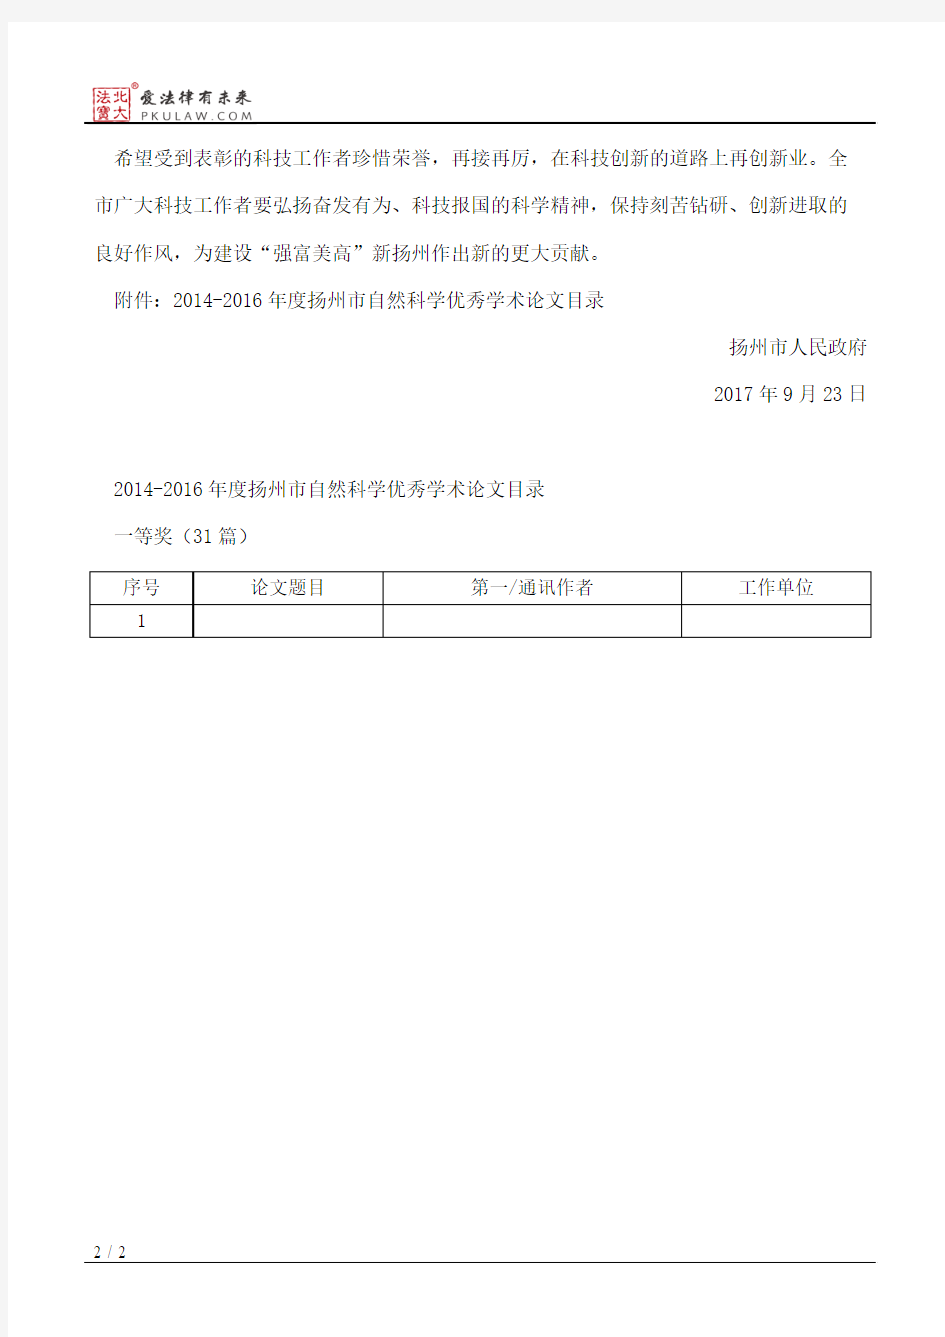 扬州市政府关于表彰2014—2016年度扬州市自然科学优秀学术论文的决定